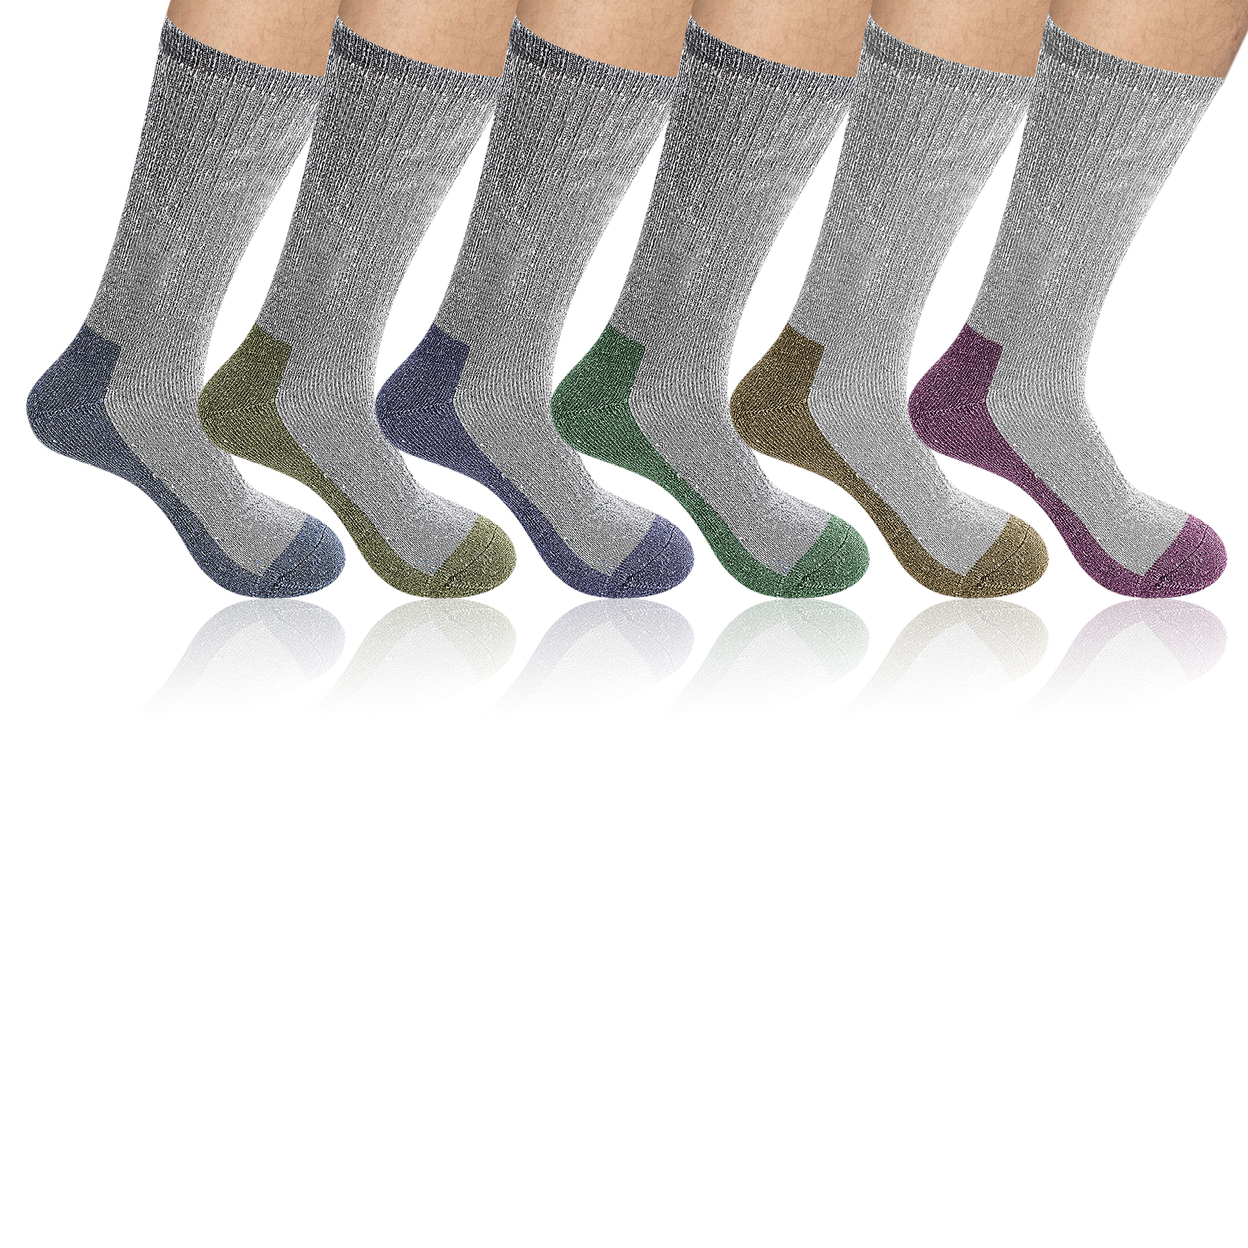 6-Pairs: Men's Warm Thick Merino Lamb Wool Socks